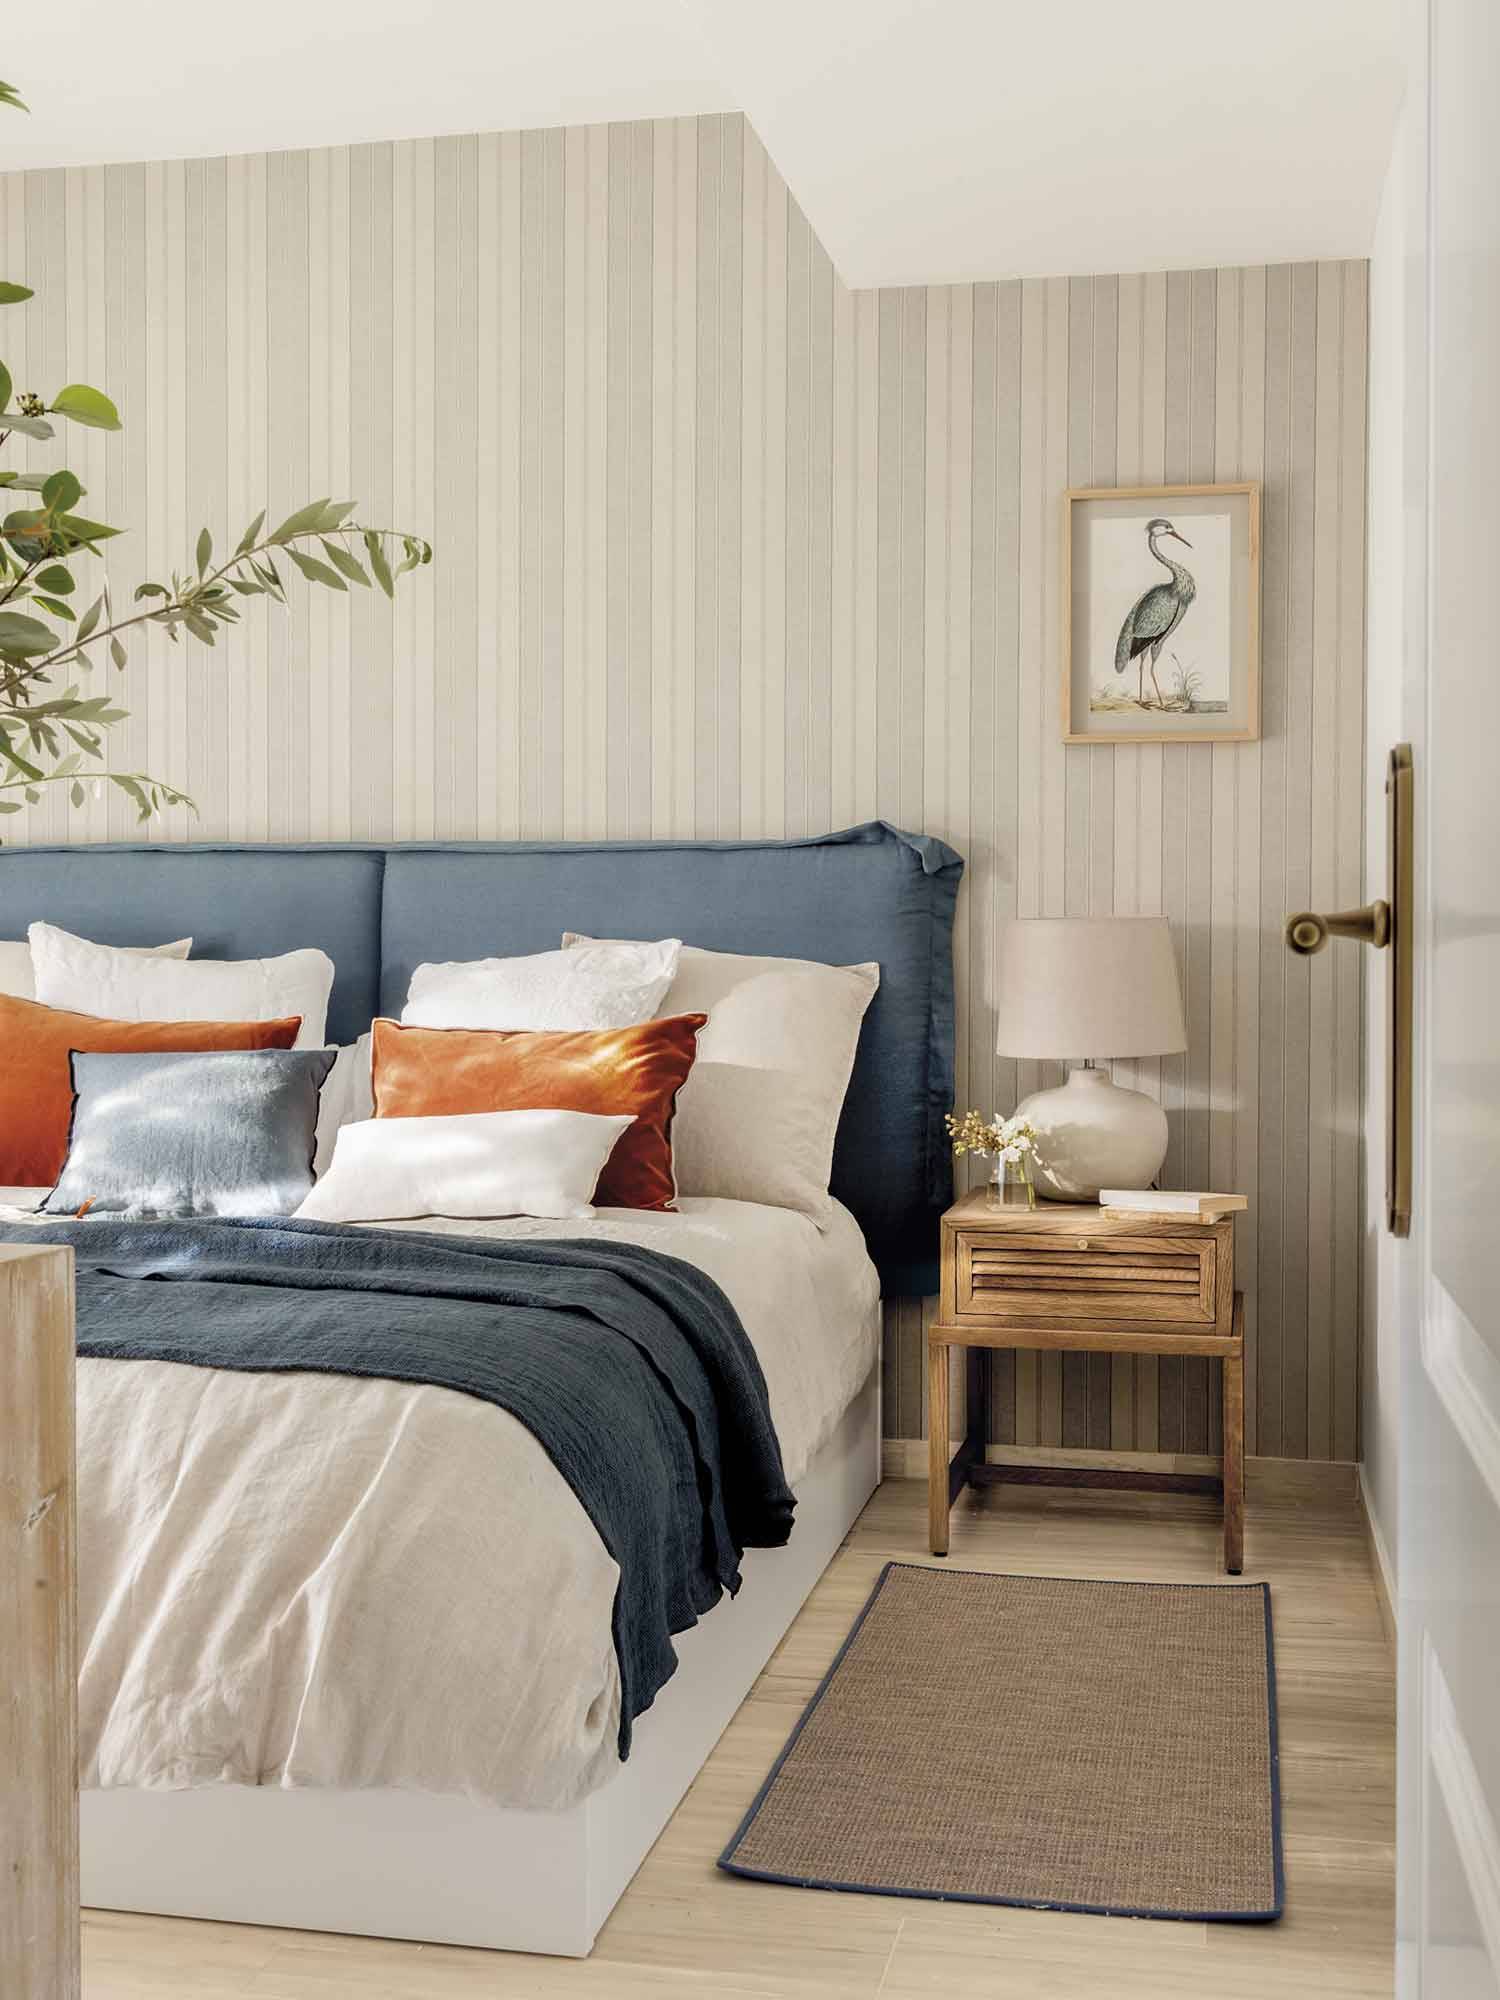 Dormitorio clásico con cabecero de lino de color azul y papel pintado de rayas.  